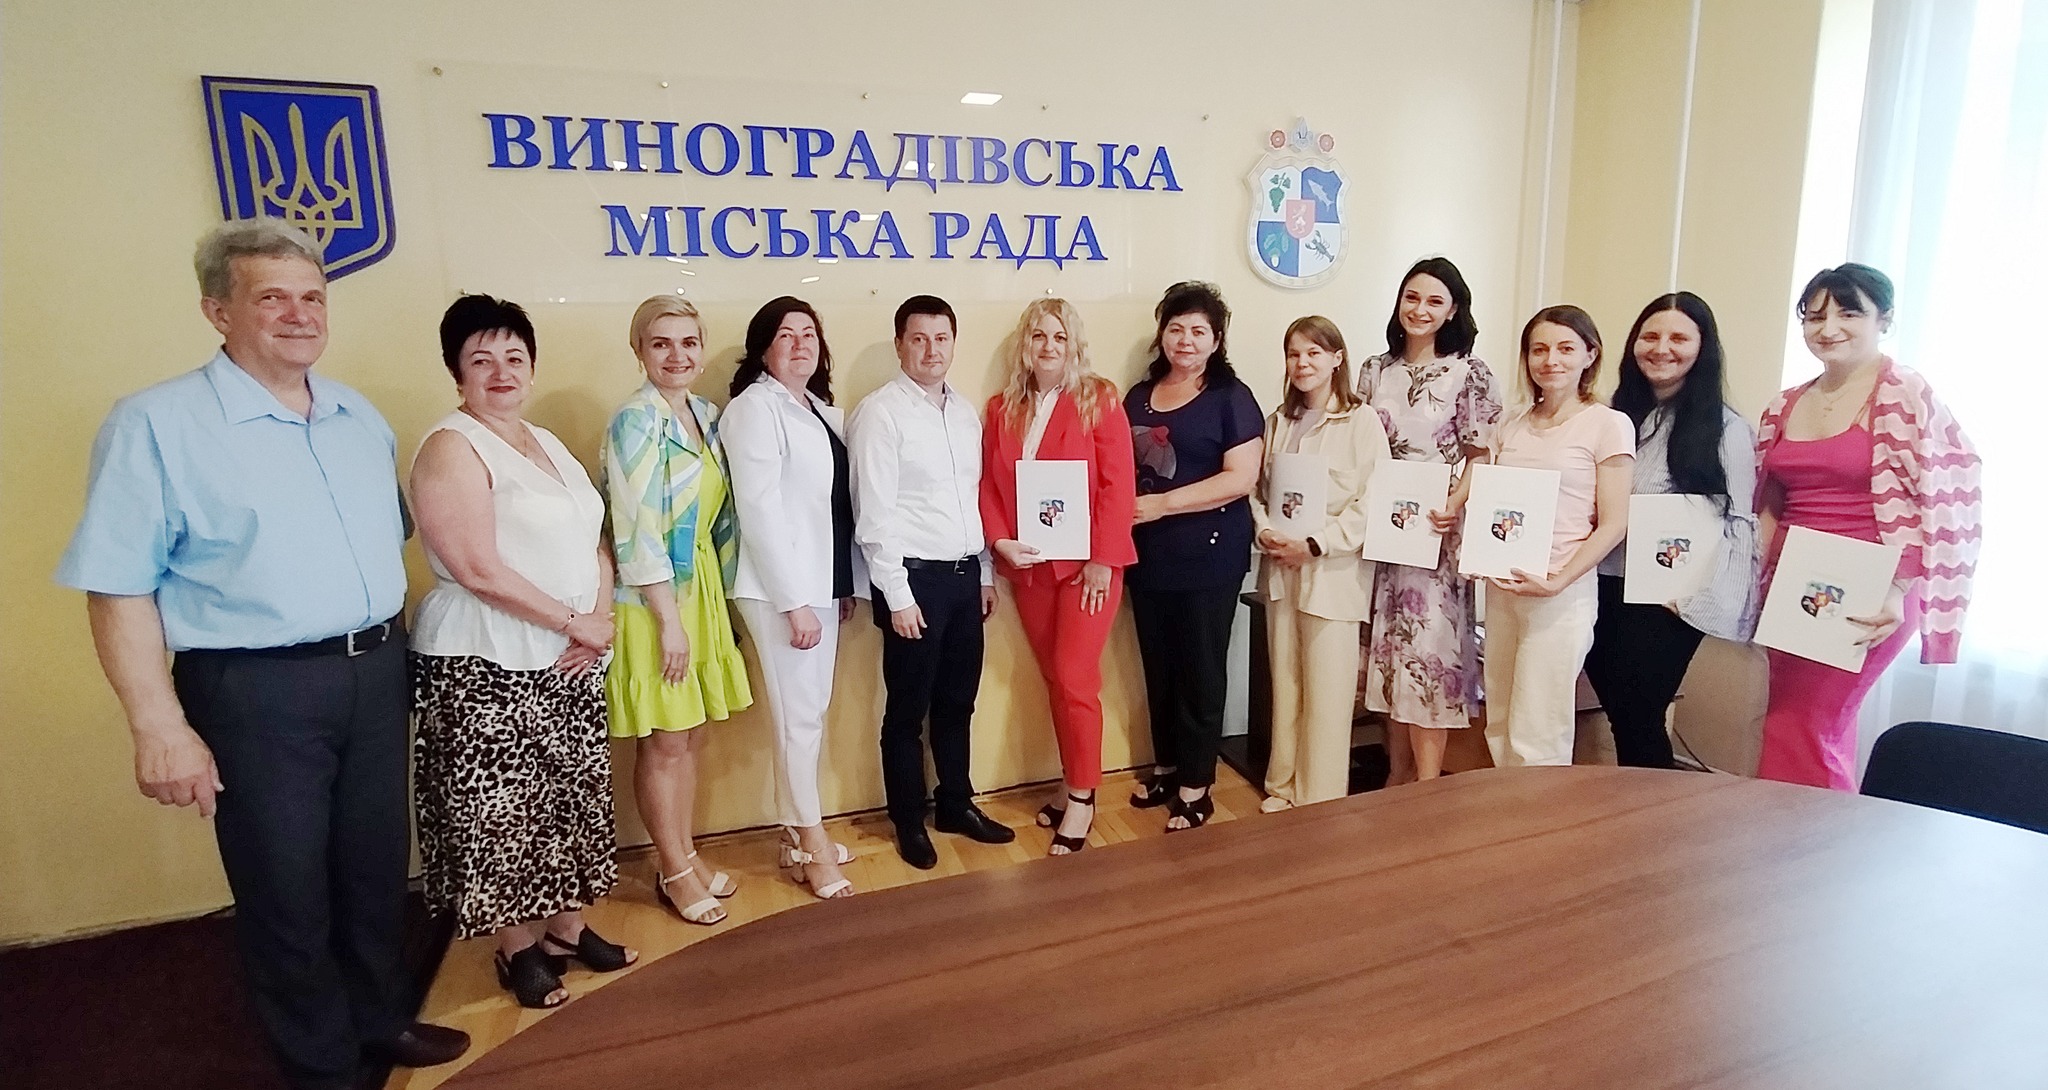 З 22 травня по 02 червня у Виноградівській міській раді успішно відбулася реалізація нового проекту – стажування молоді.